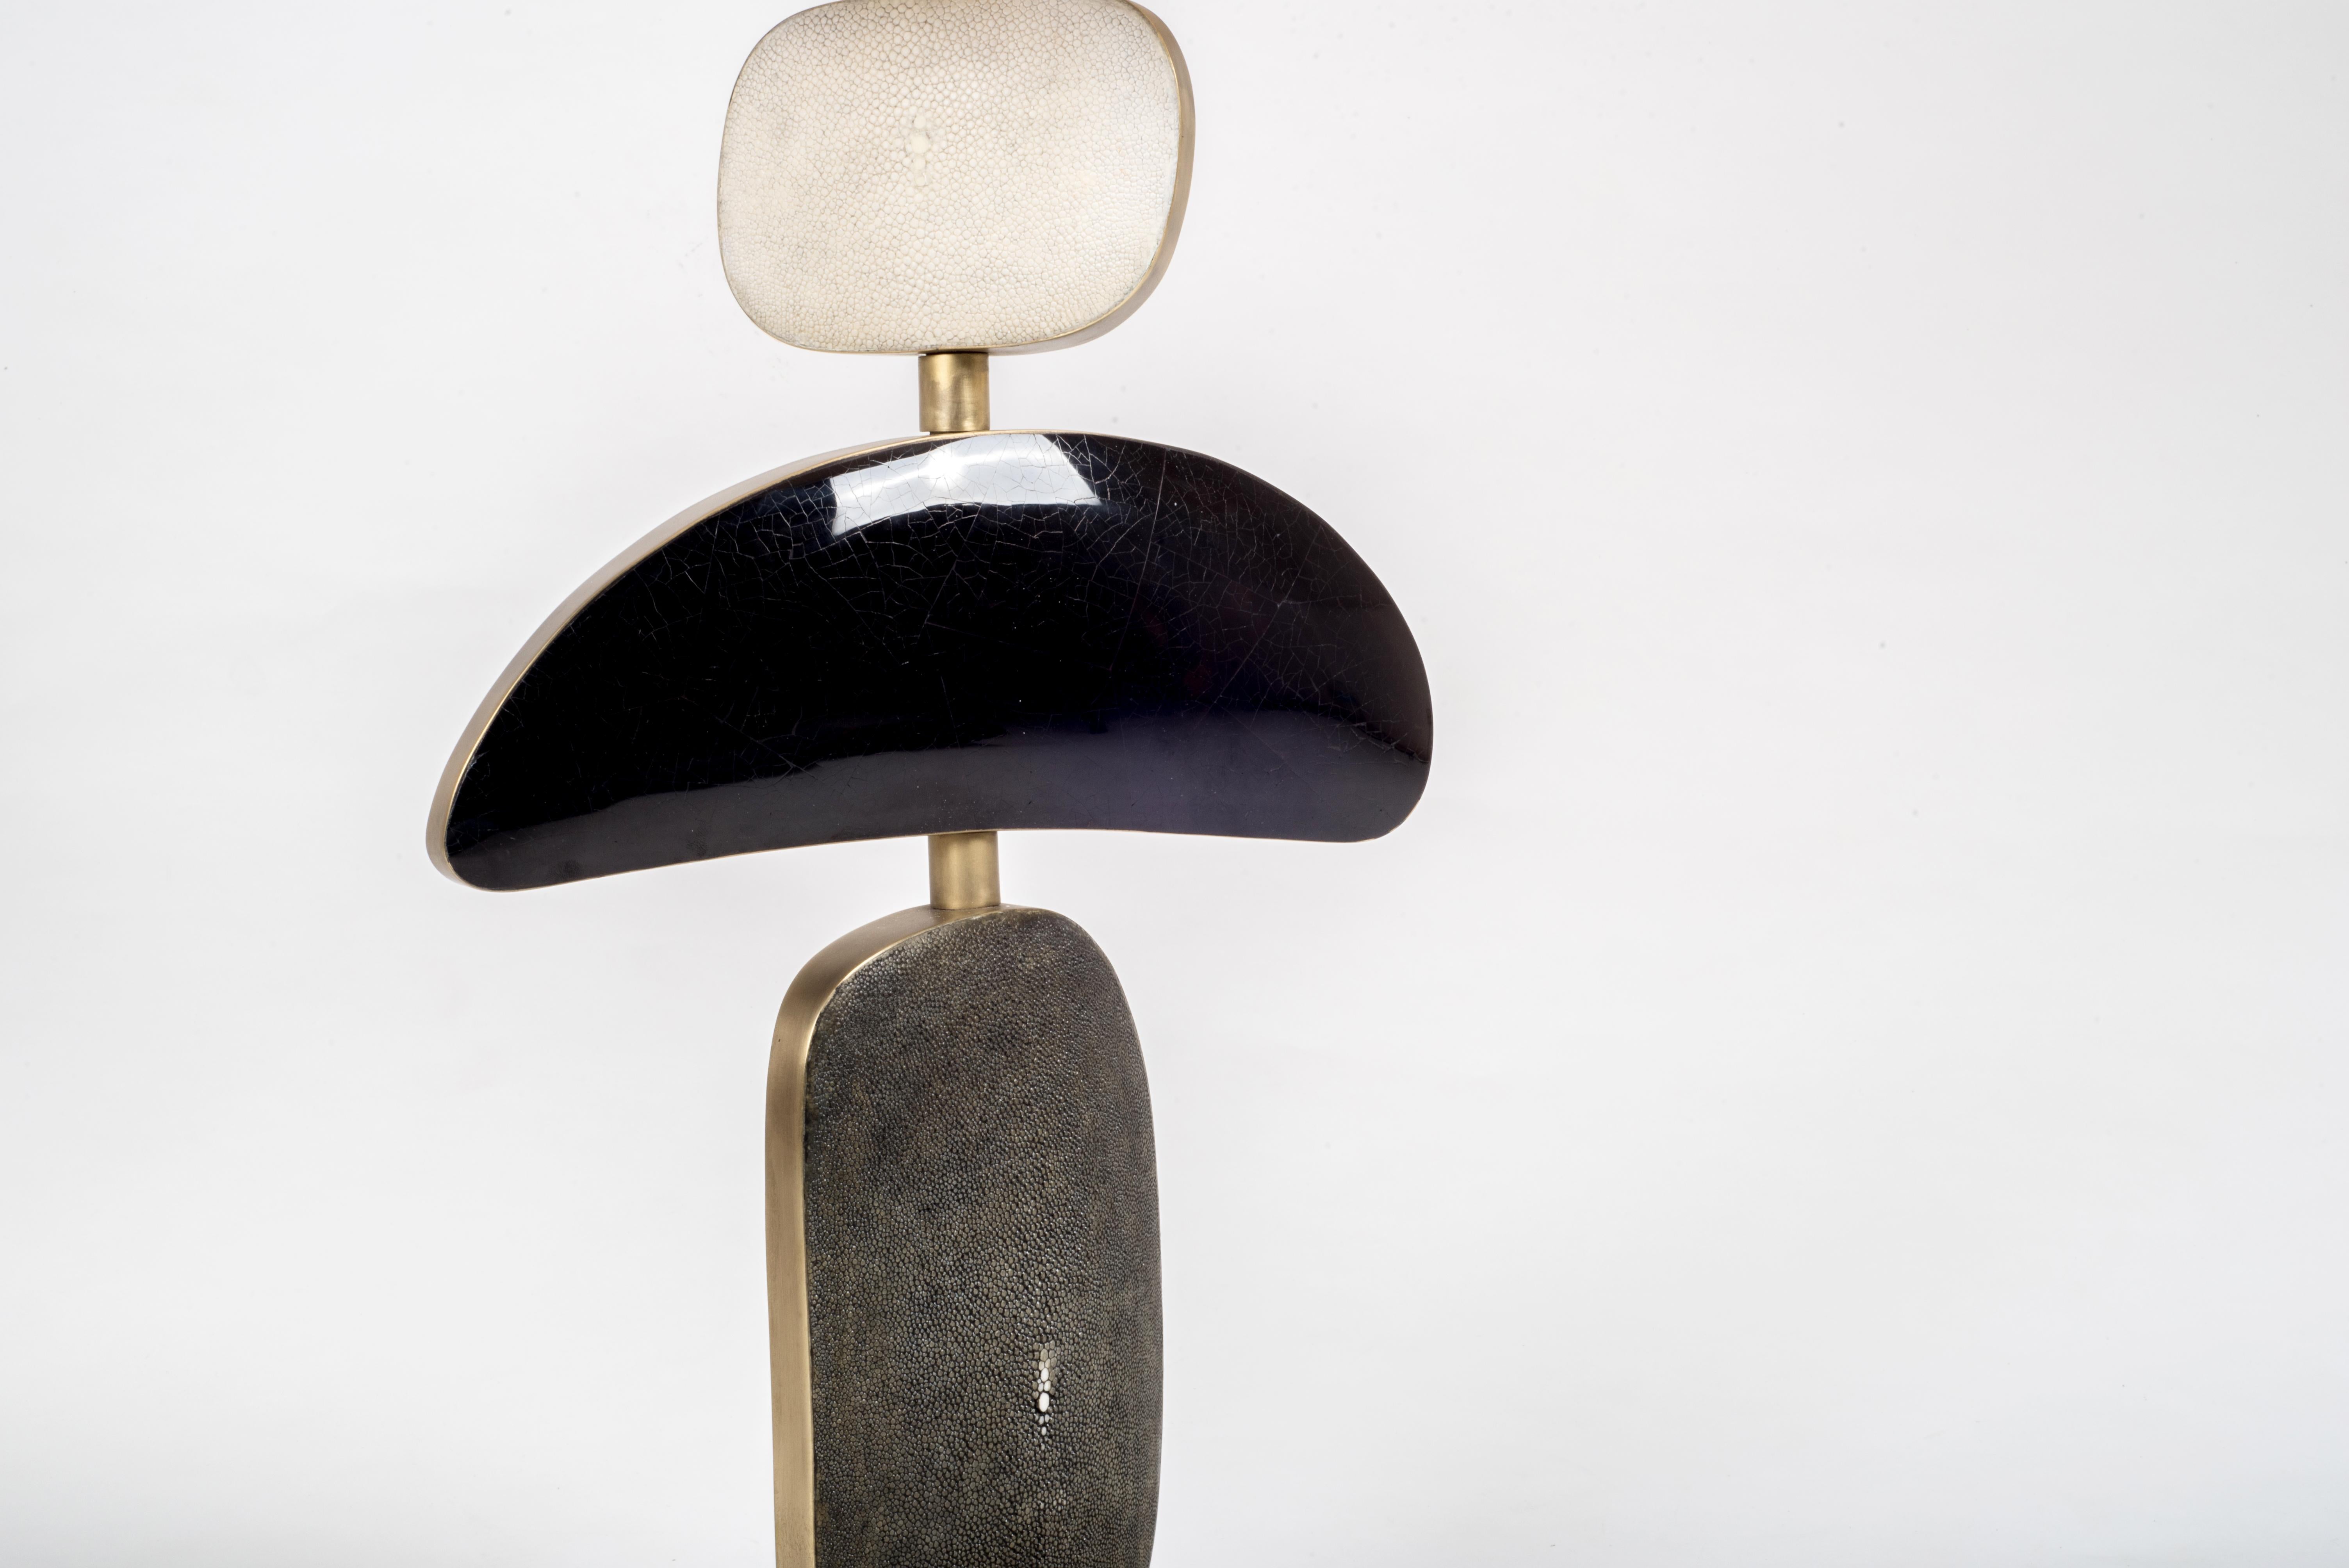 La lampe de table Cosmo de Kifu Paris est une pièce fantaisiste et sculpturale, incrustée de crème, de coquille noire et de noir avec des accents de laiton bronze-patiné. Les formes amorphes de la partie inférieure peuvent être déplacées pour